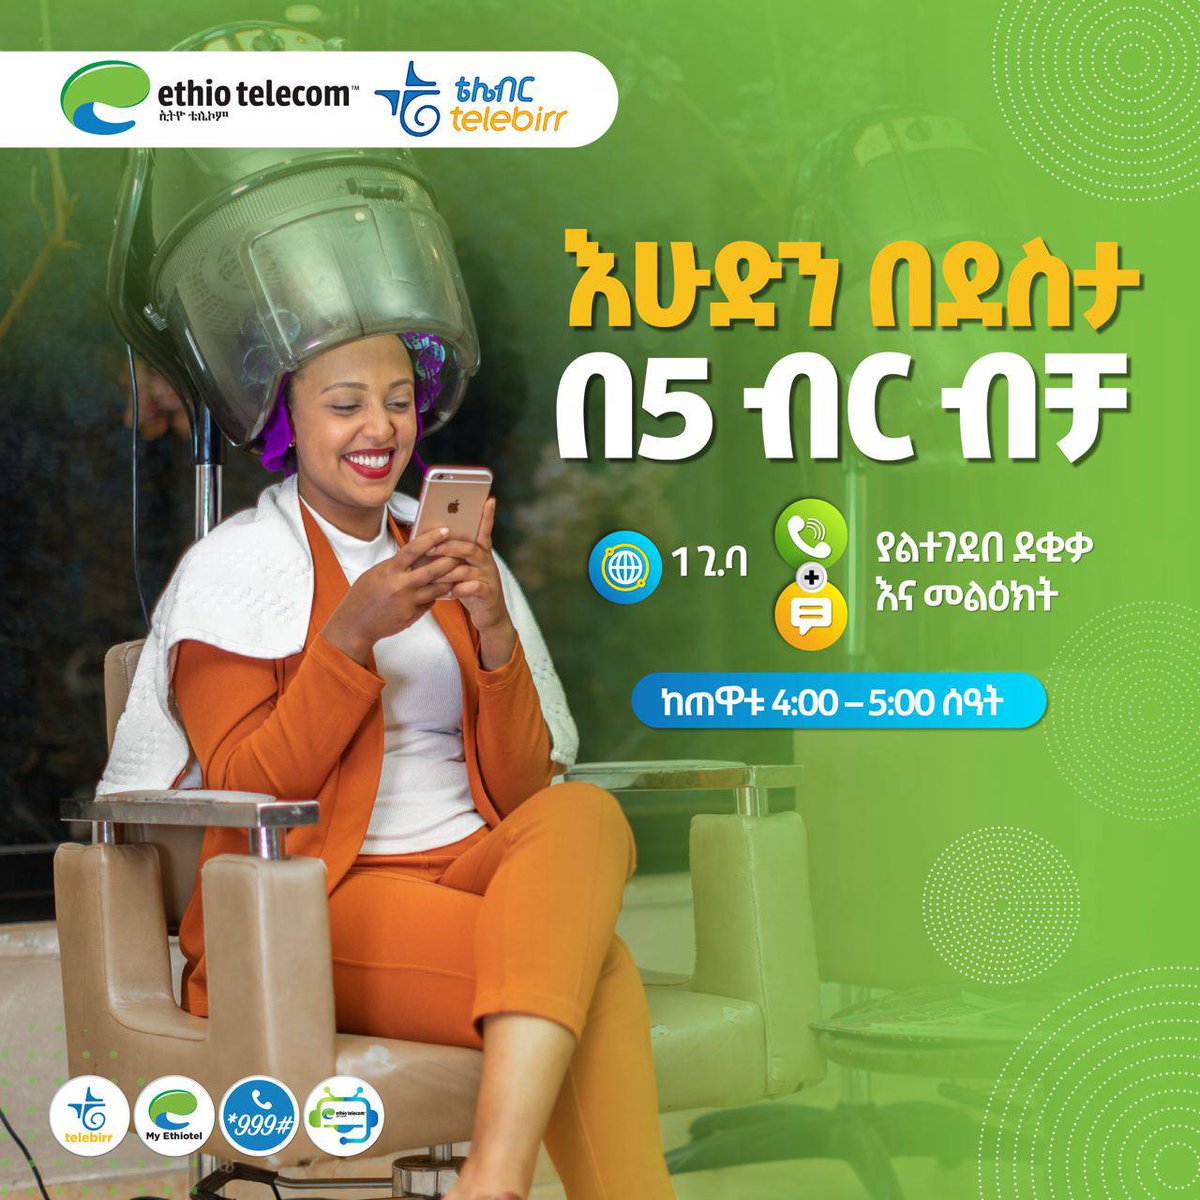 በዕረፍት ቀንዎ 1 ጊ.ባ ዳታ ያልተገደበ ደቂቃ እና መልዕክት በ5 ብር ብቻ በመግዛት ከወዳጅ ቤተሰብ ጋር ያውጉ! ከረፋዱ 4:00-5:00 ሰዓት! #Sunday #StayConnected #Ethiotelecom #telebirr #DigitalAfrica #DigitalEthiopia #RealizingDigitalEthiopia